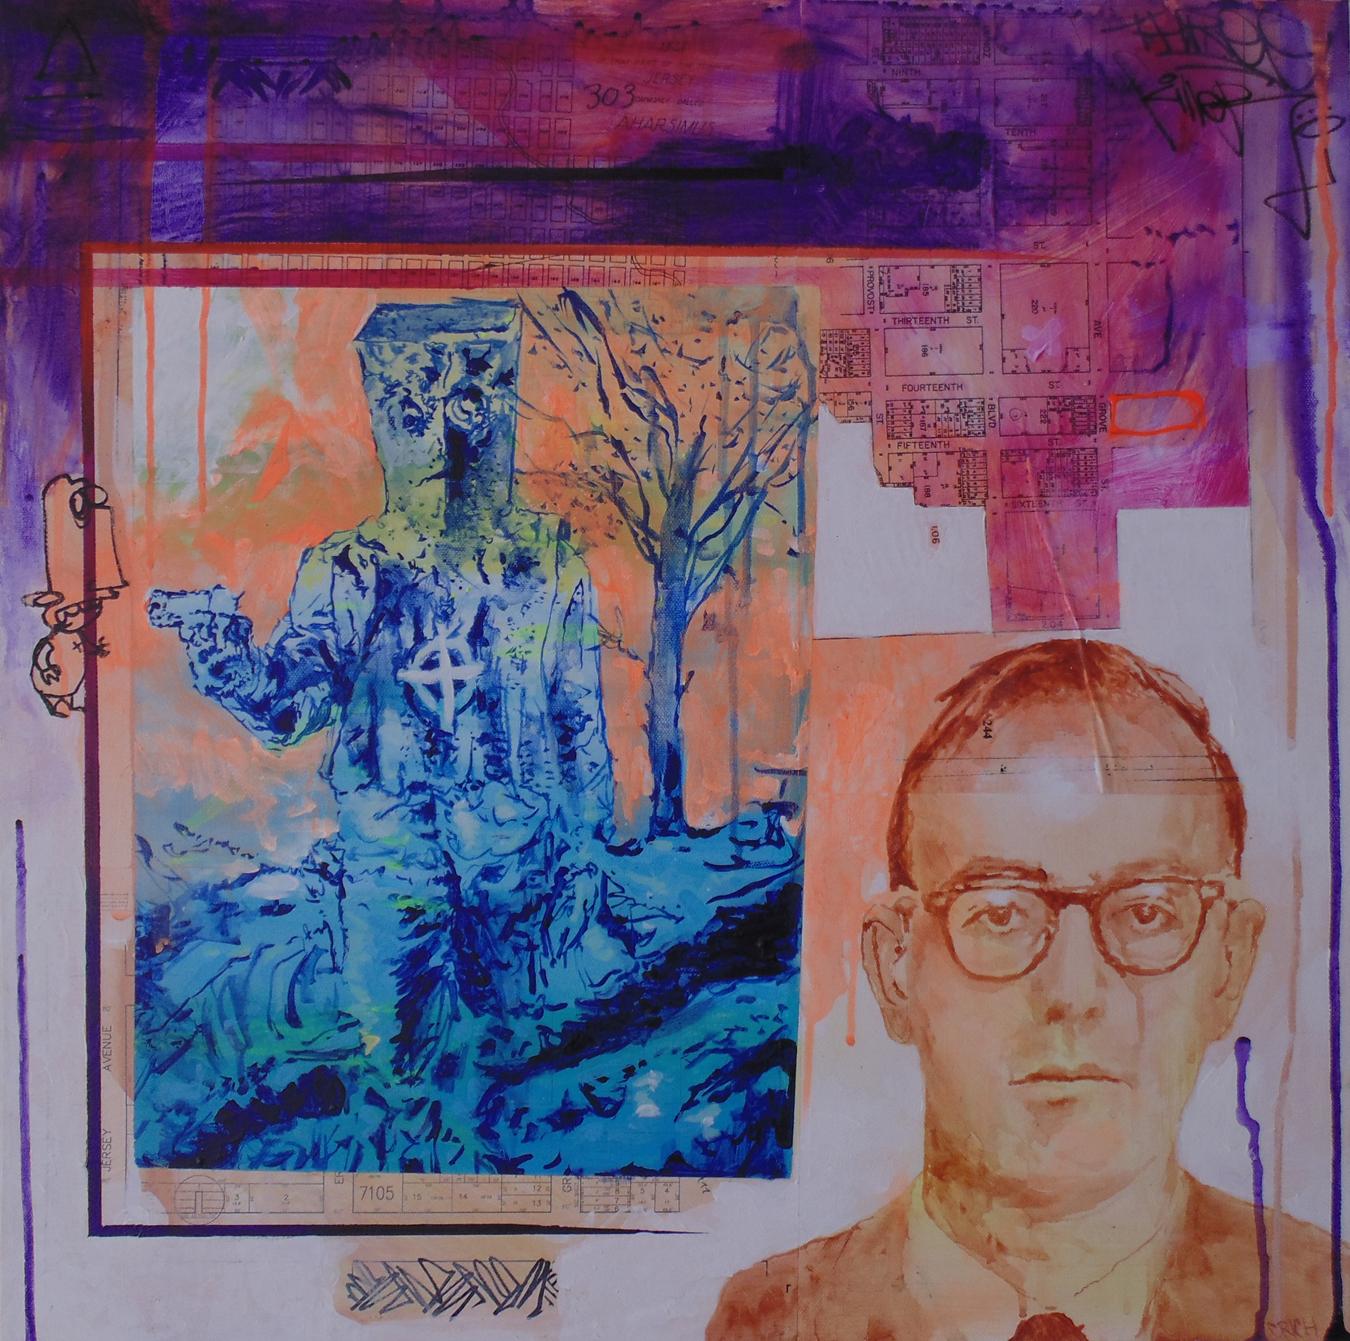 Zodiac Killer, pop art, peinture de portrait figuratif, carrée, palette lumineuse - Painting de Clarence Rich